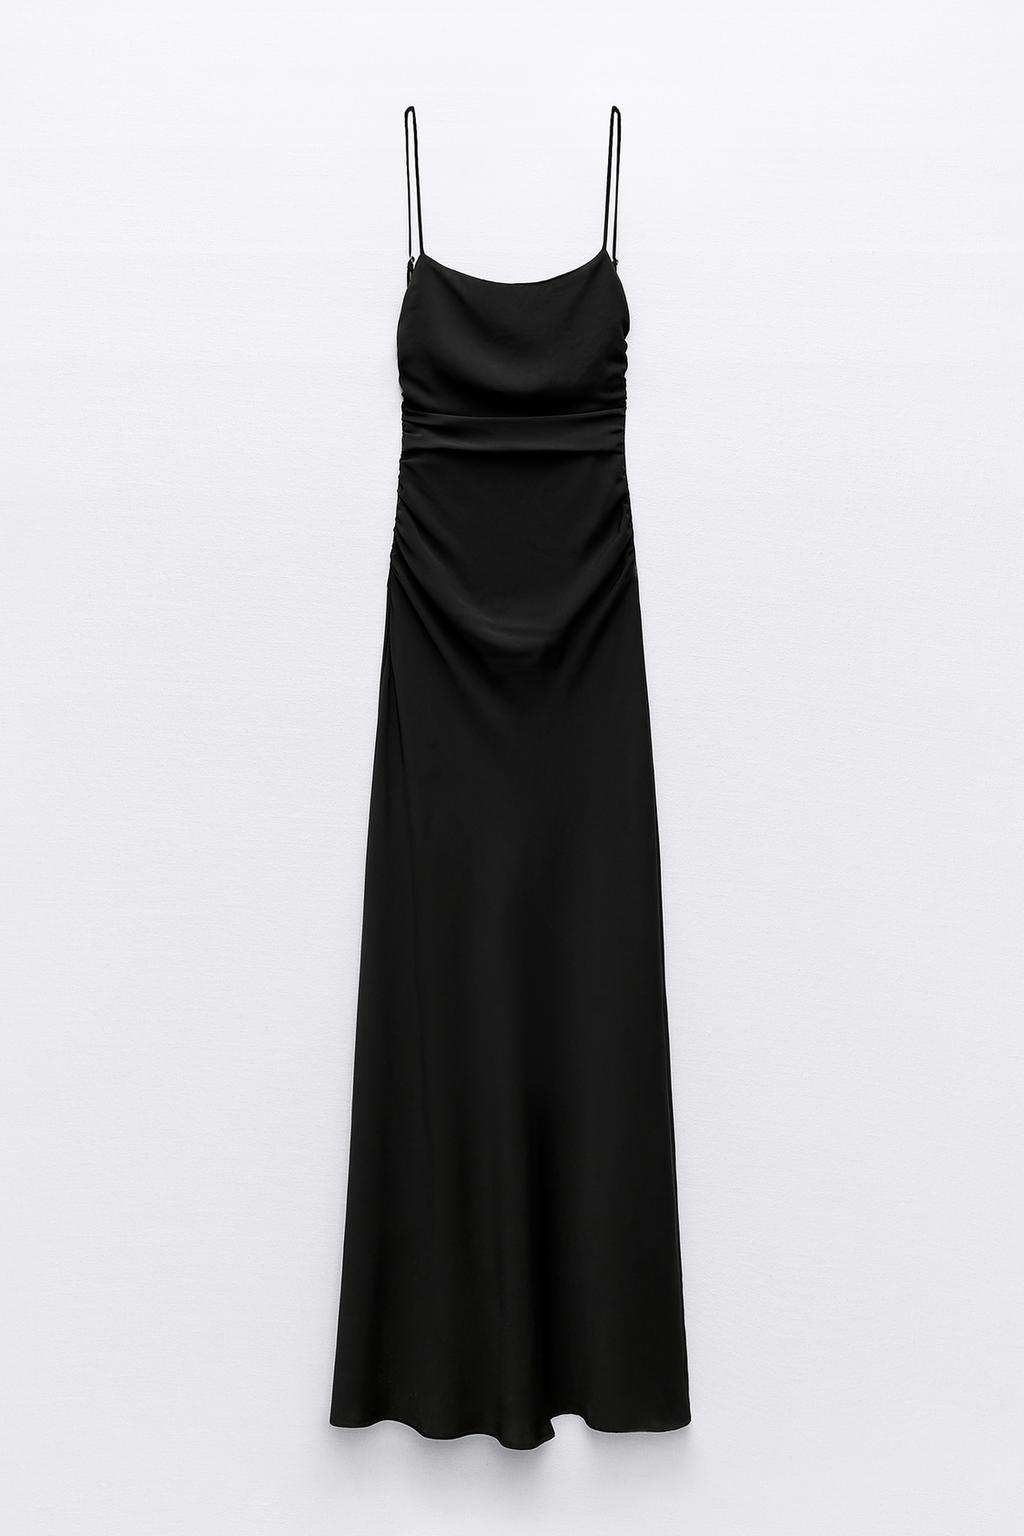 Vestido drapeado espalda descubierta de Zara 35,95 euros